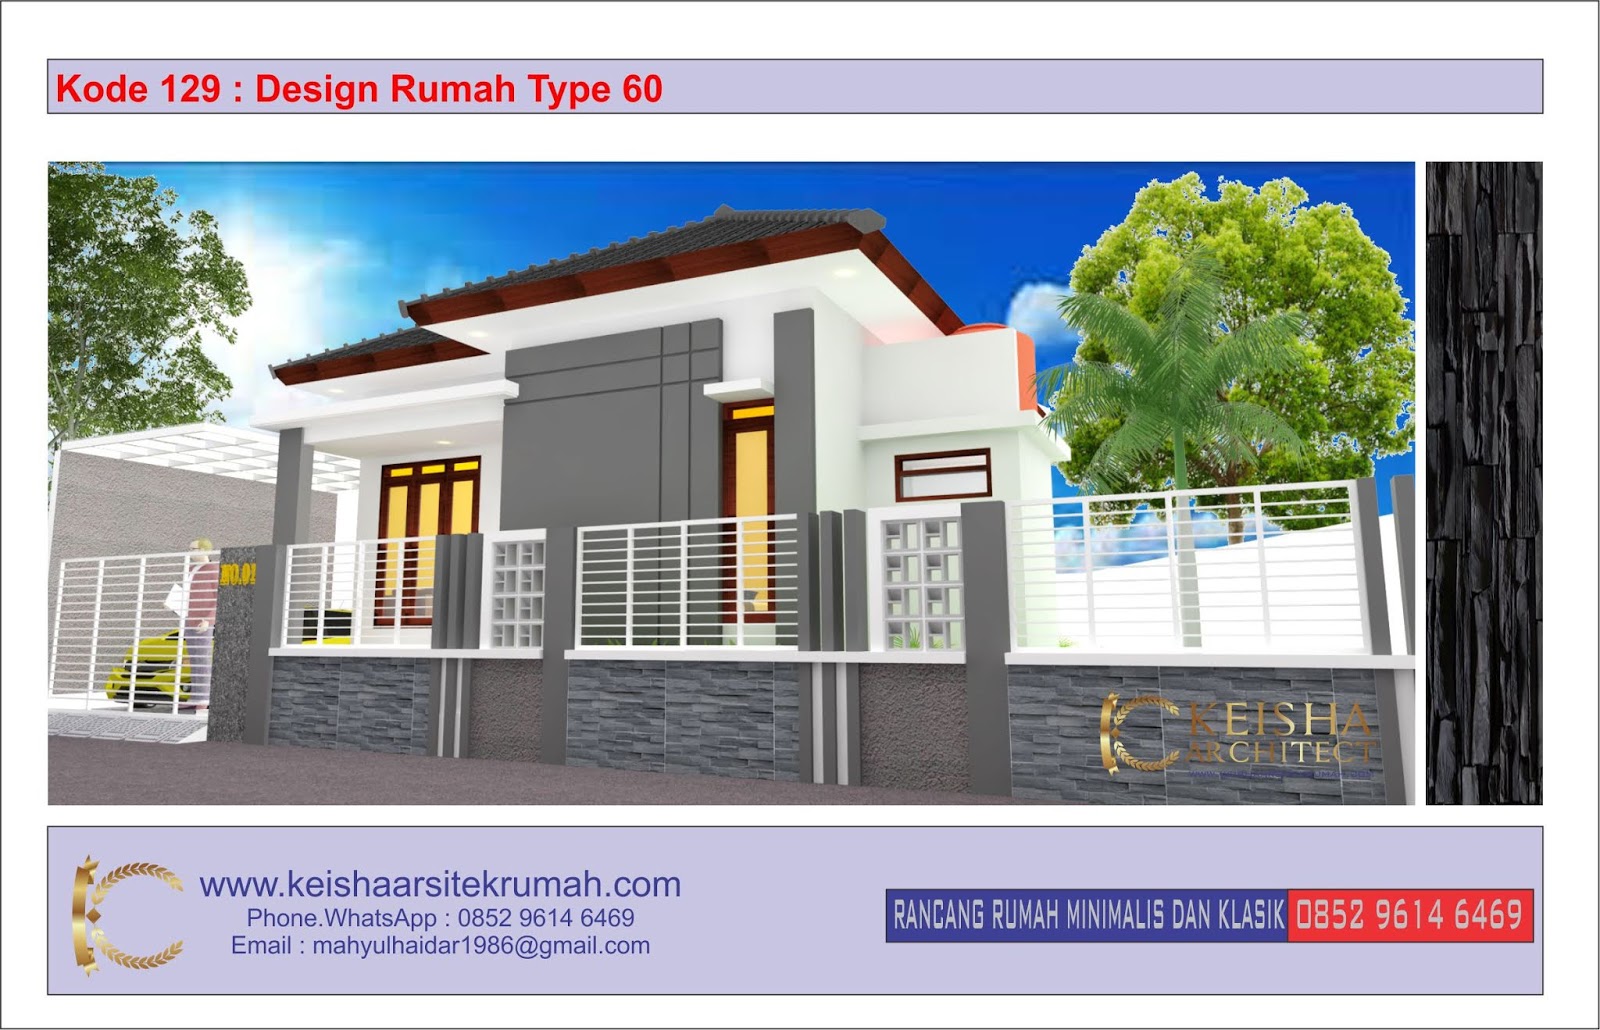 Kode 129 Desain Rumah Type 60 Minimalis Lokasi Banda Aceh